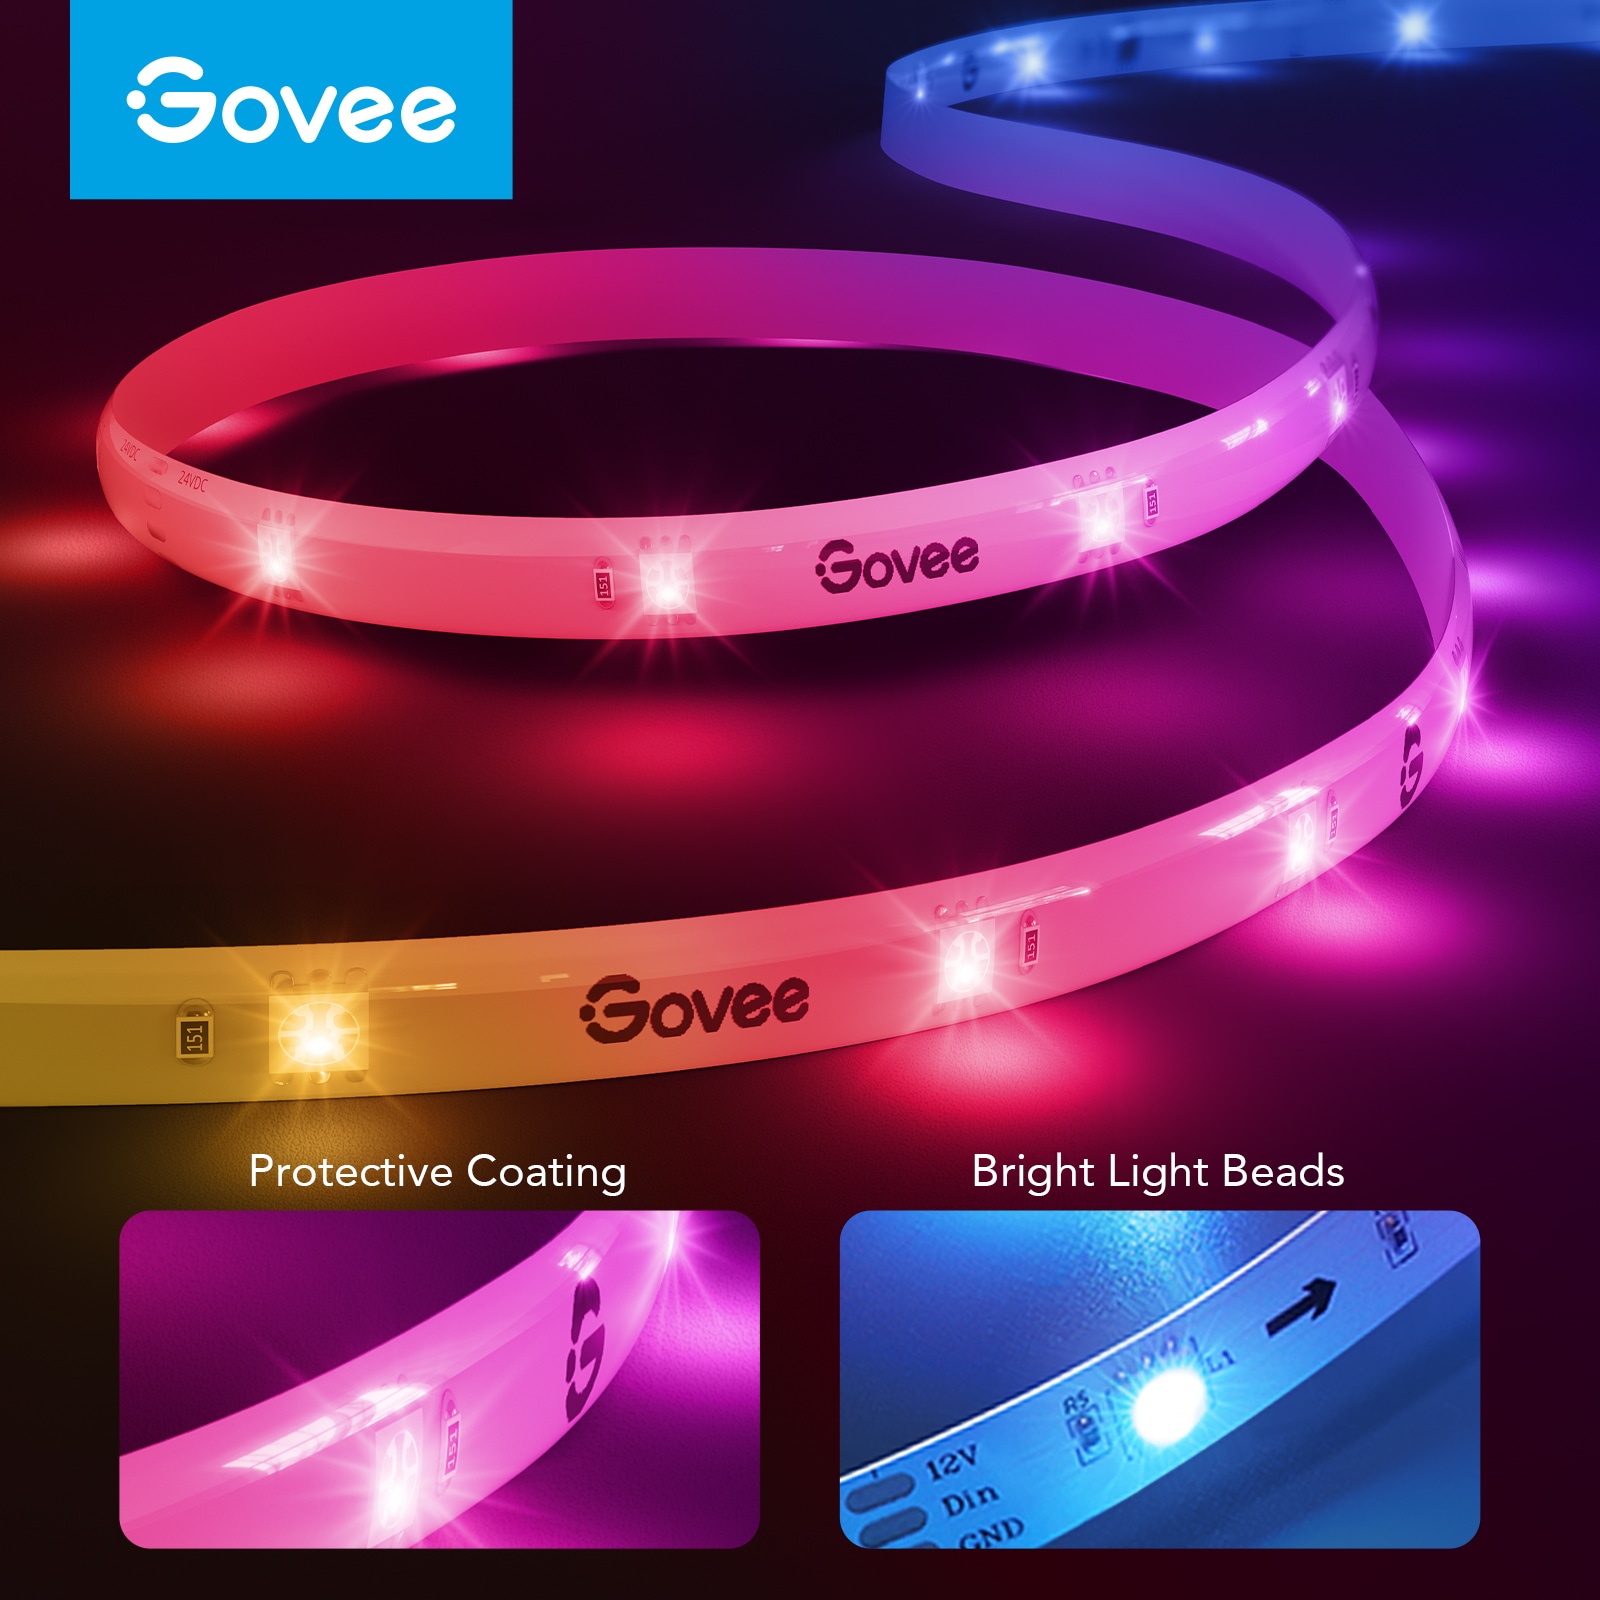 Govee RGBIC Basic Wi-Fi + Bluetooth LED Strip Lights - Govee